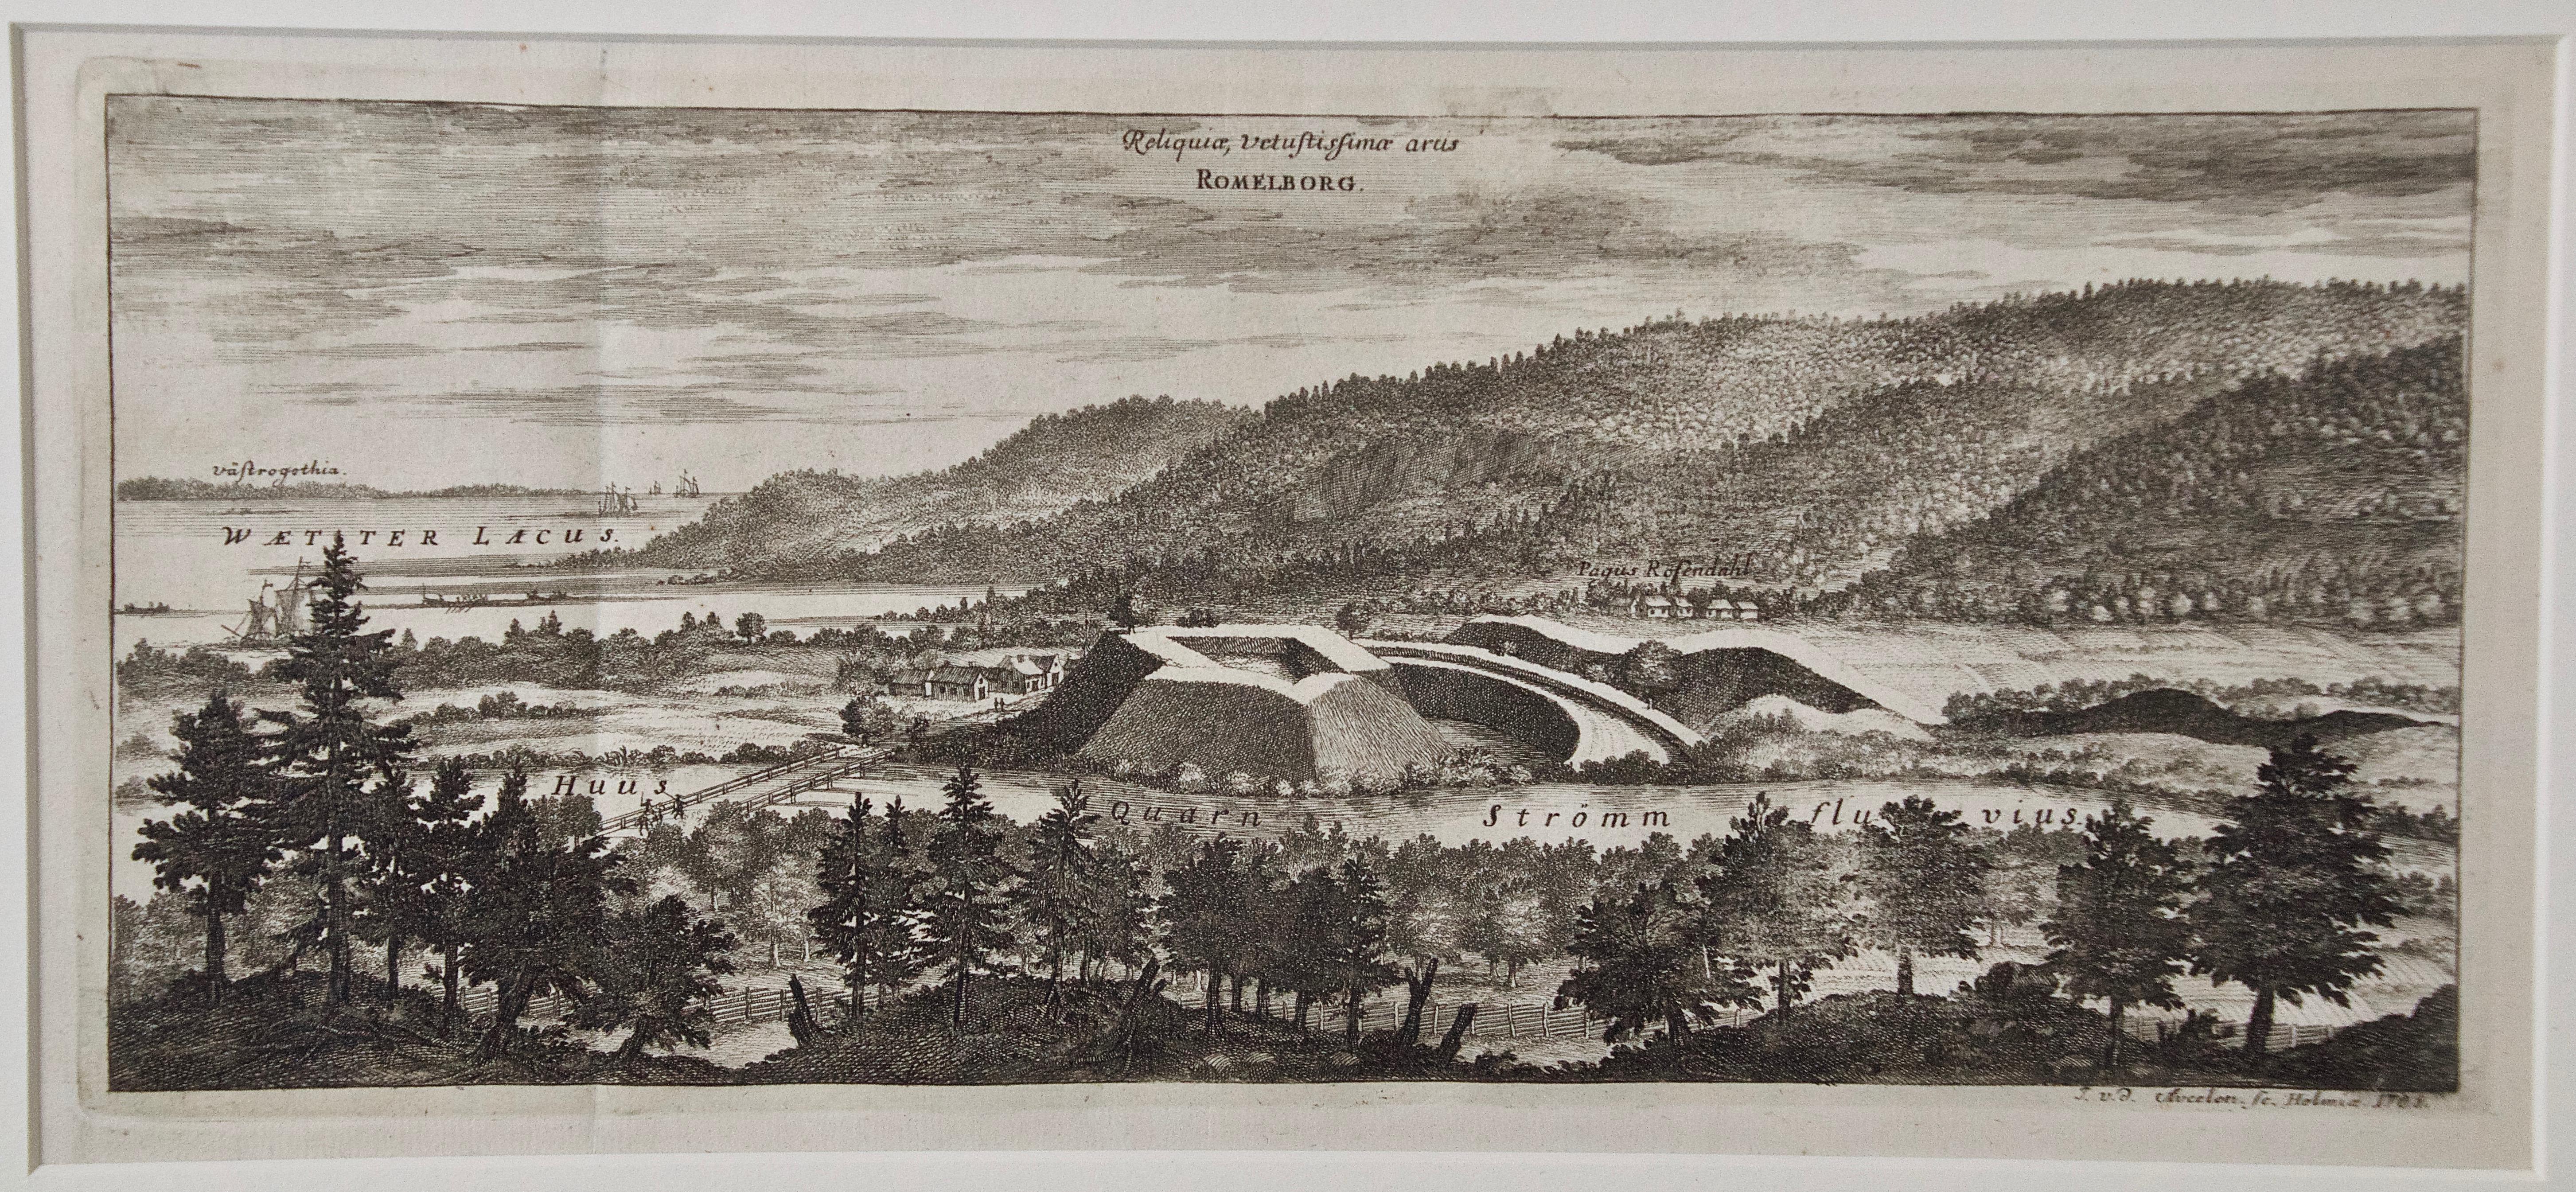 Une vue gravée ancienne de "Romelborg", Suède, en 1705, tirée de "Sueciae Antiquae et Hodiernae" publiée à Stockholm par Erik Dahlberg  (1625-1703). La gravure a été créée par Johannes V. D. Aveelen (1650-1727), qui était un graveur sur cuivre